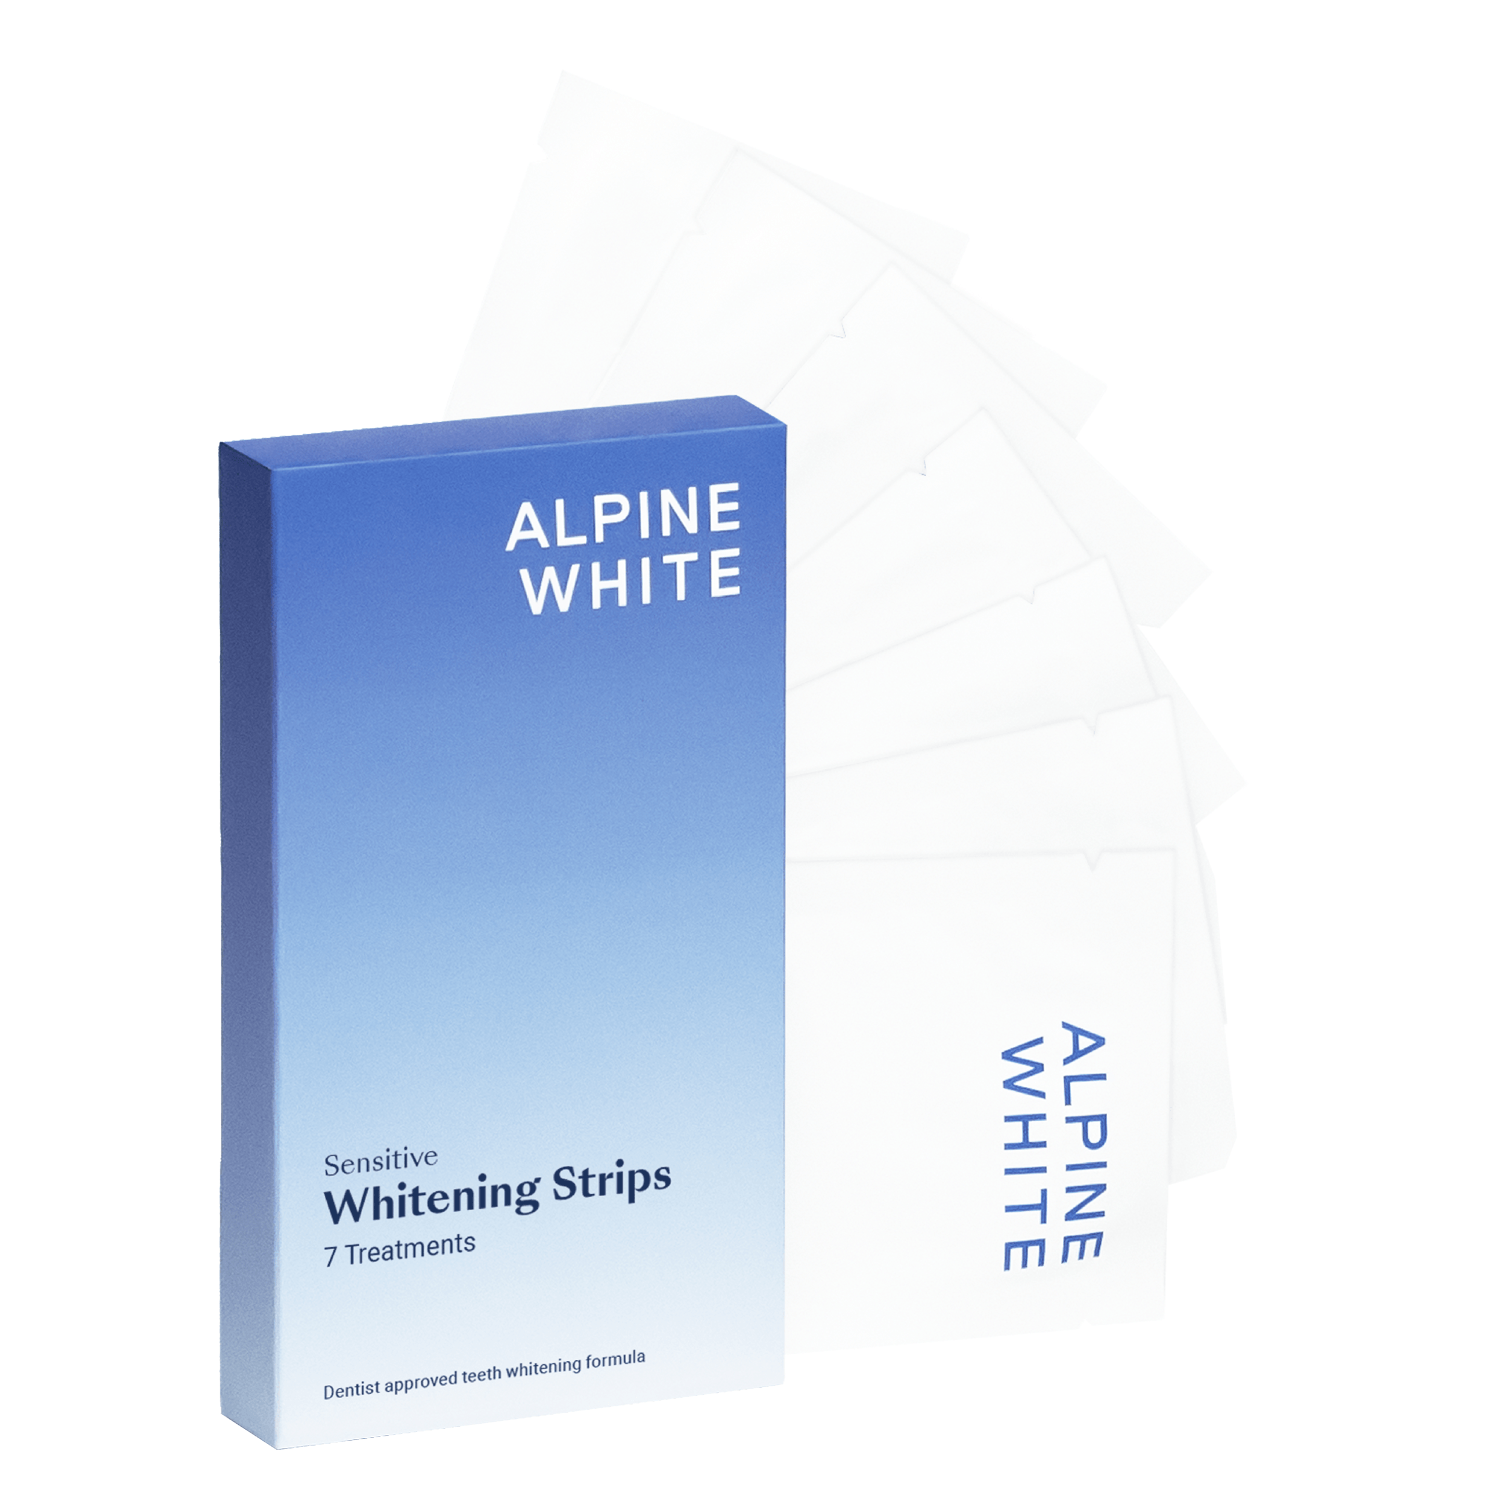 Produktbild von ALPINE WHITE - Whitening Strips Sensitive